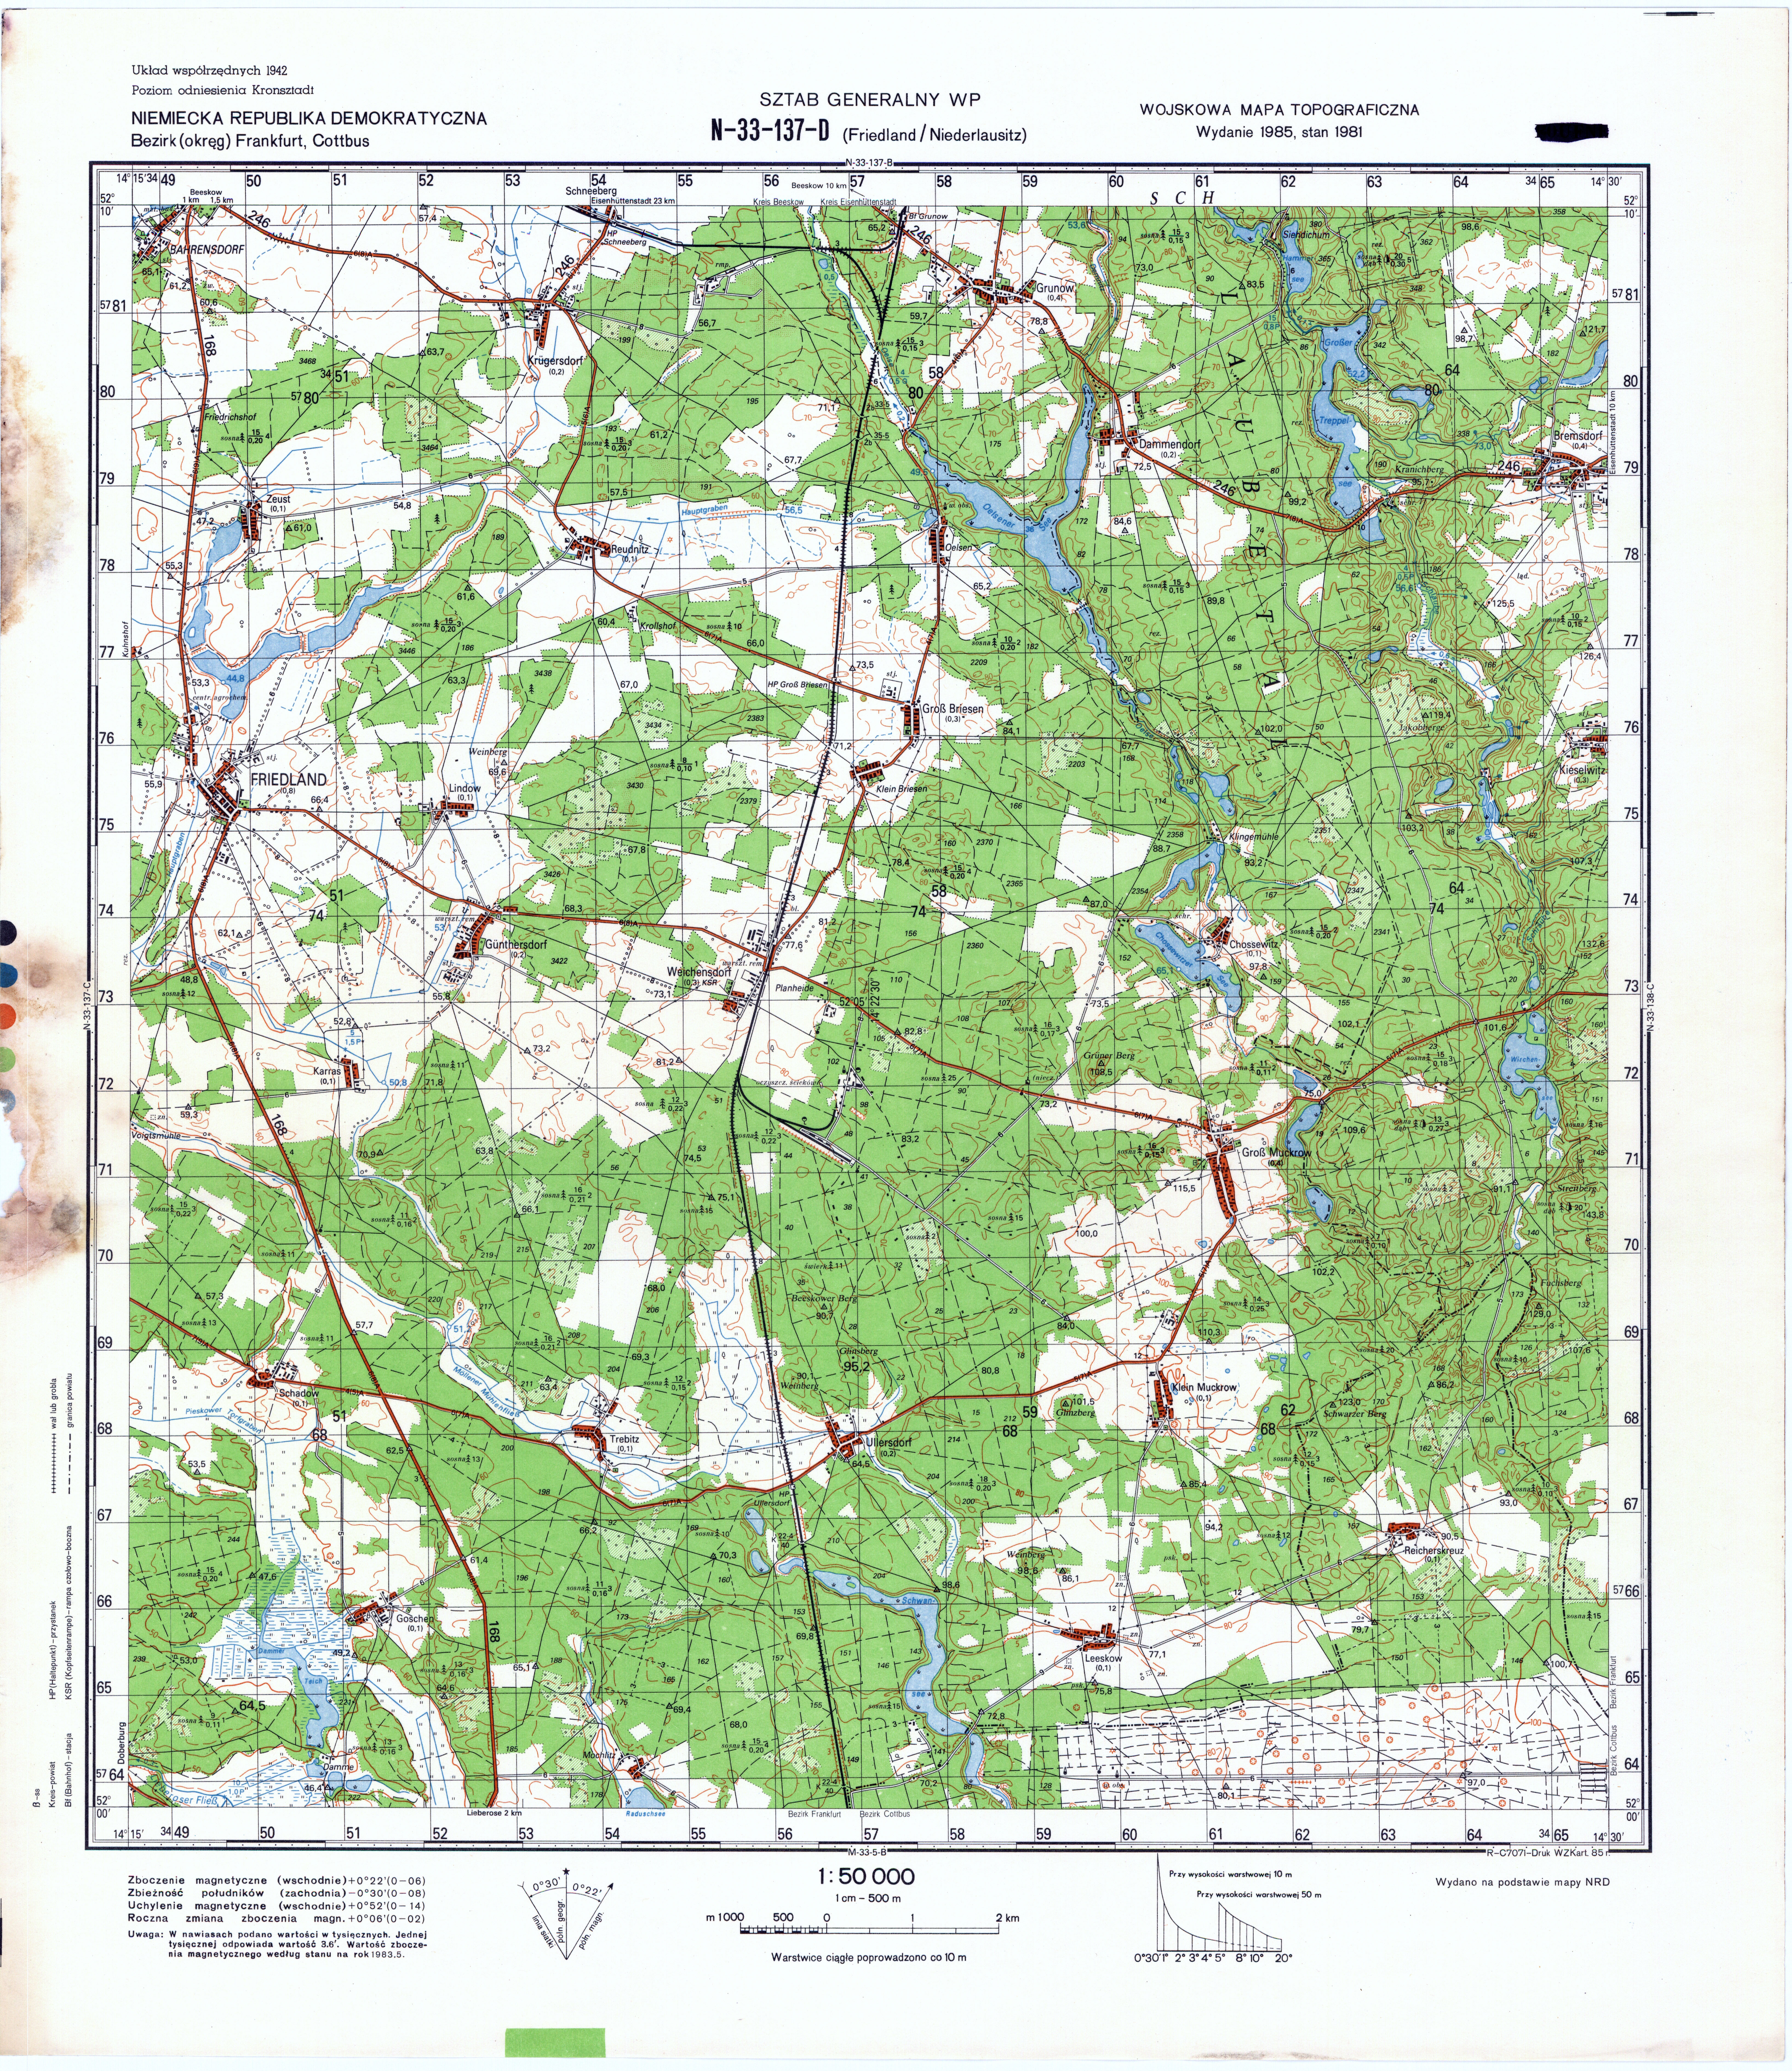 Mapy topograficzne LWP 1_50 000 - N-33-137-D_Friedland_Niederlausitz_1985.jpg